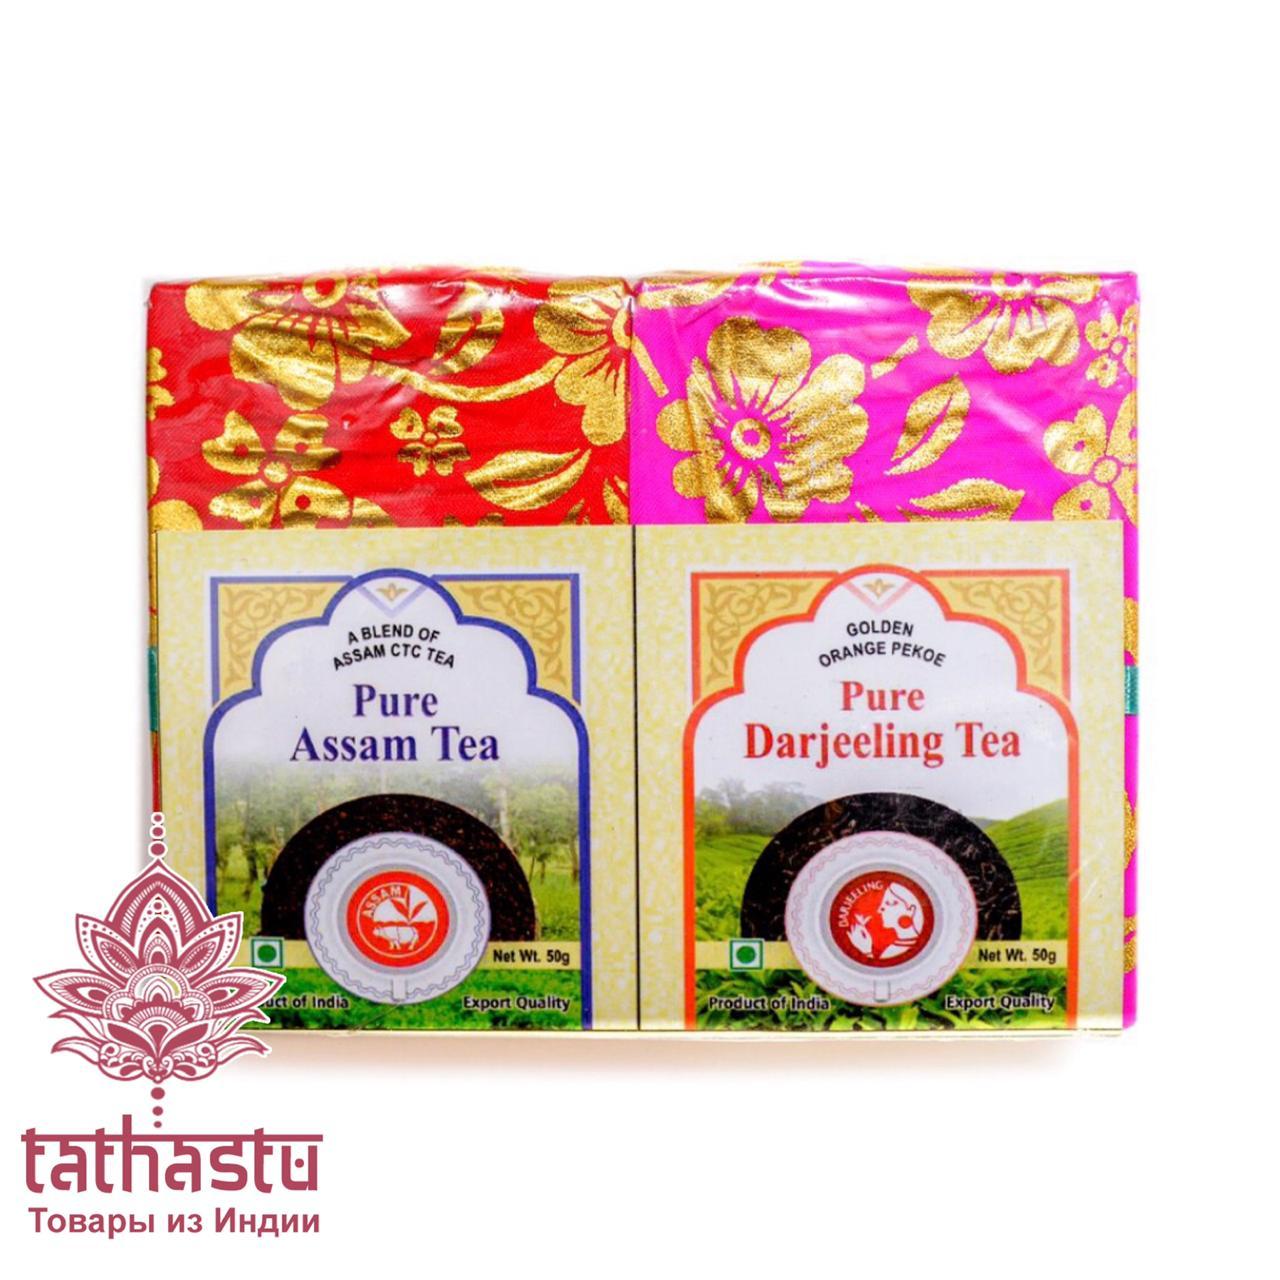 Tathastu Чайный набор. Tathastu товары и индии